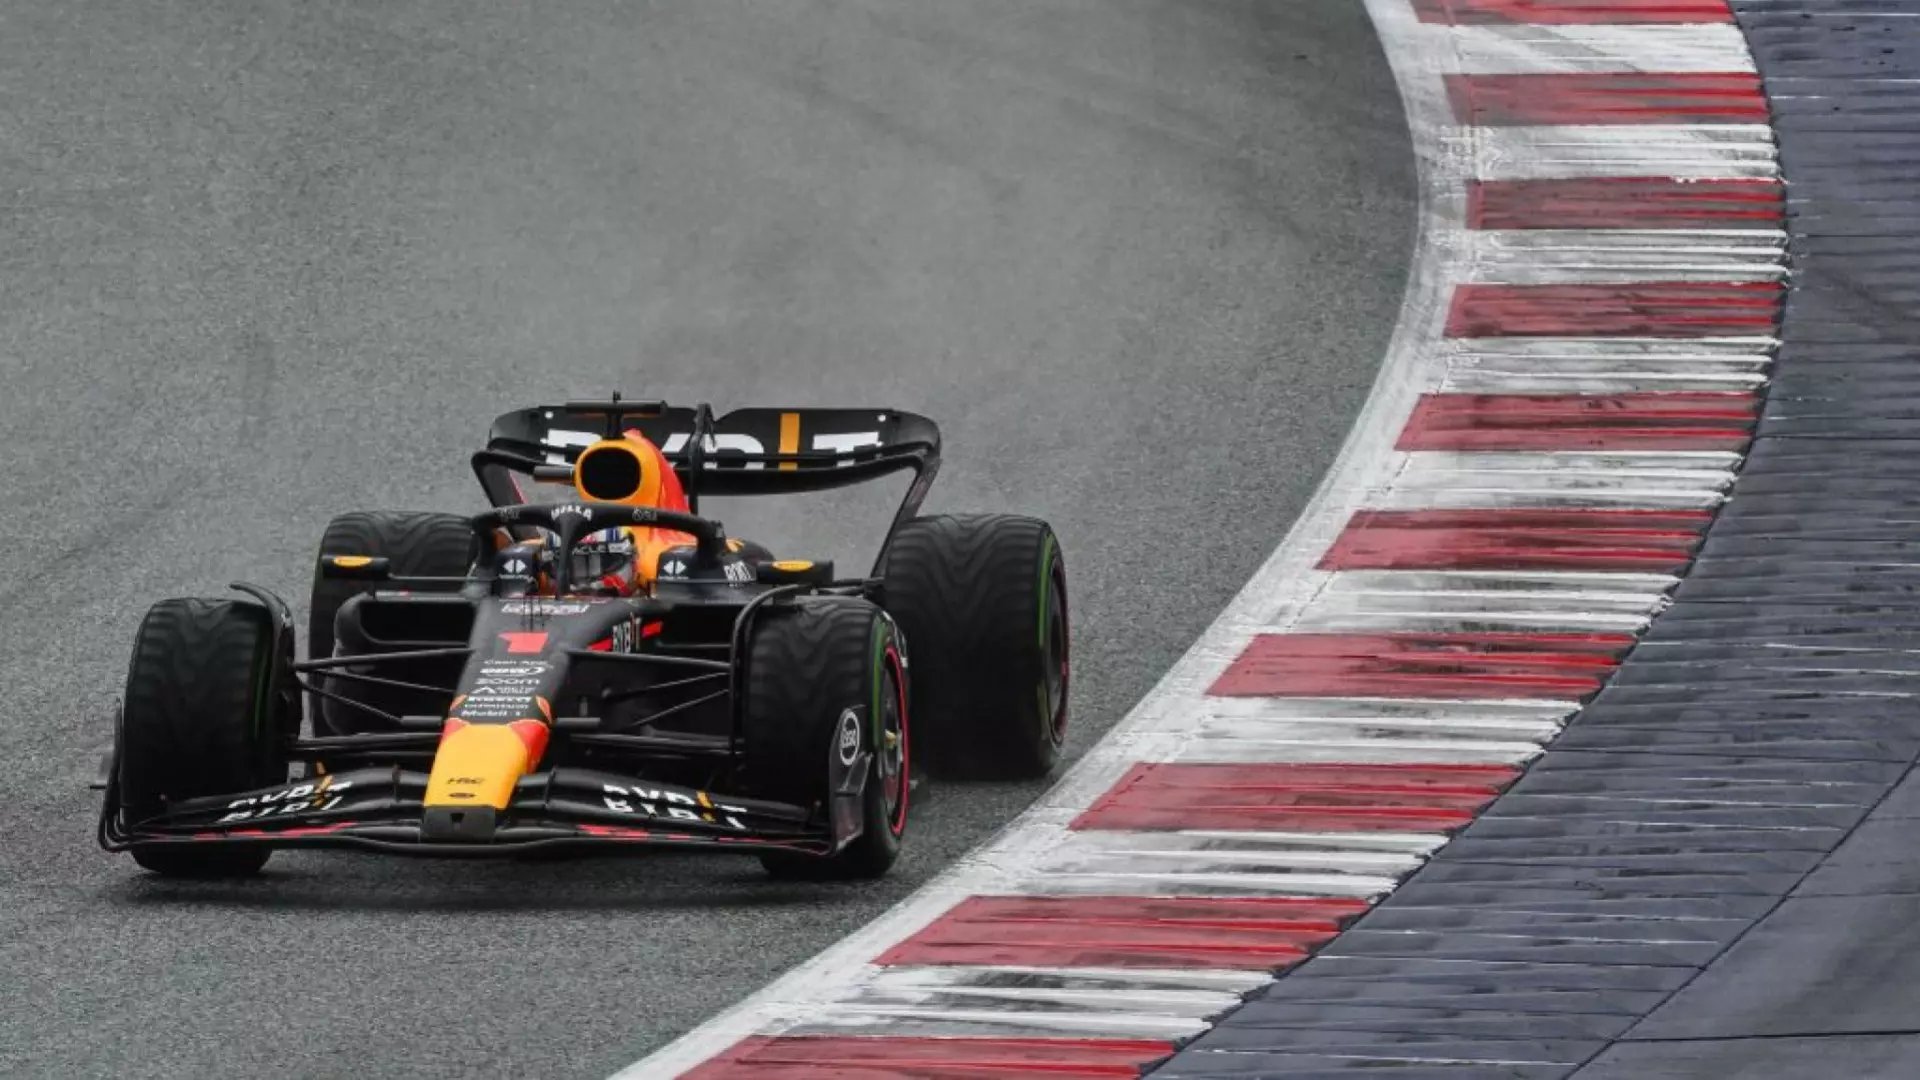 F1, Gp Austria, Max Verstappen domina la Sprint Race: primo podio per Carlos Sainz